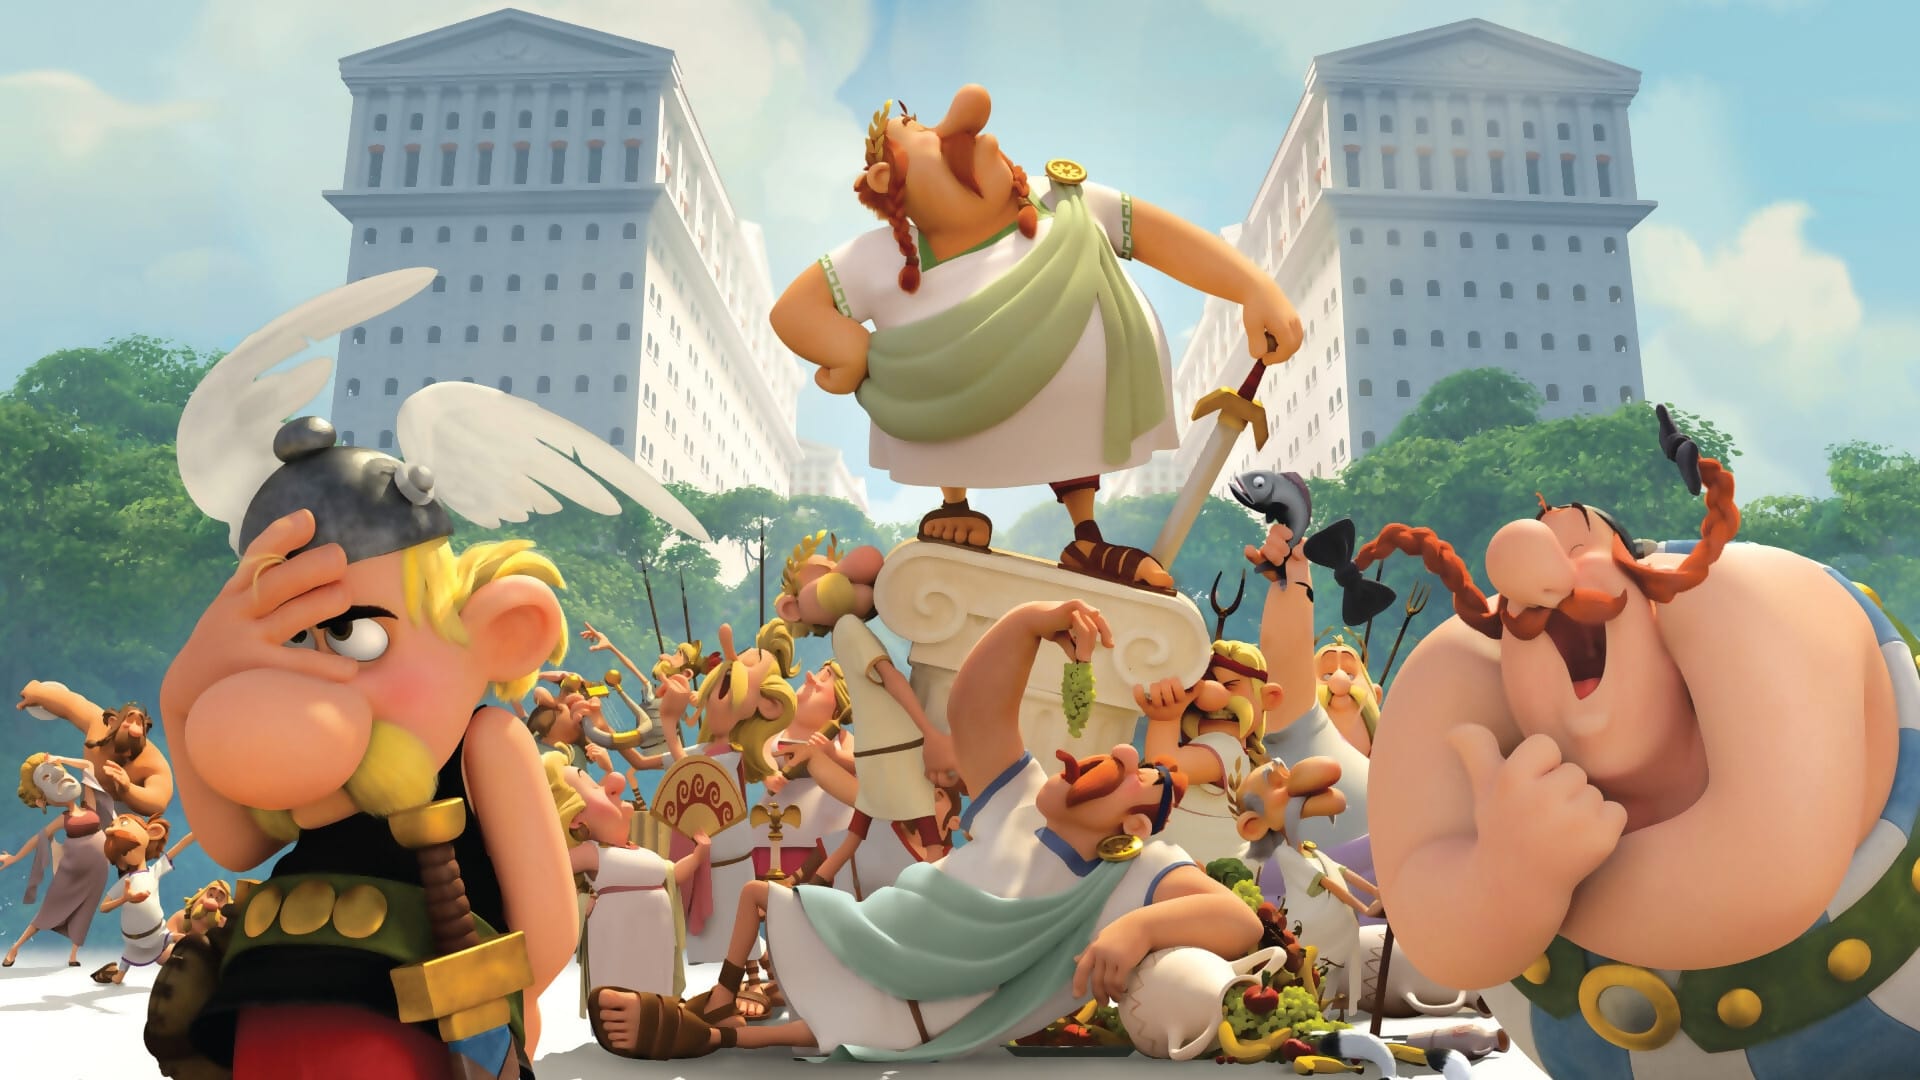 Asterix e il regno degli Dei (2014)